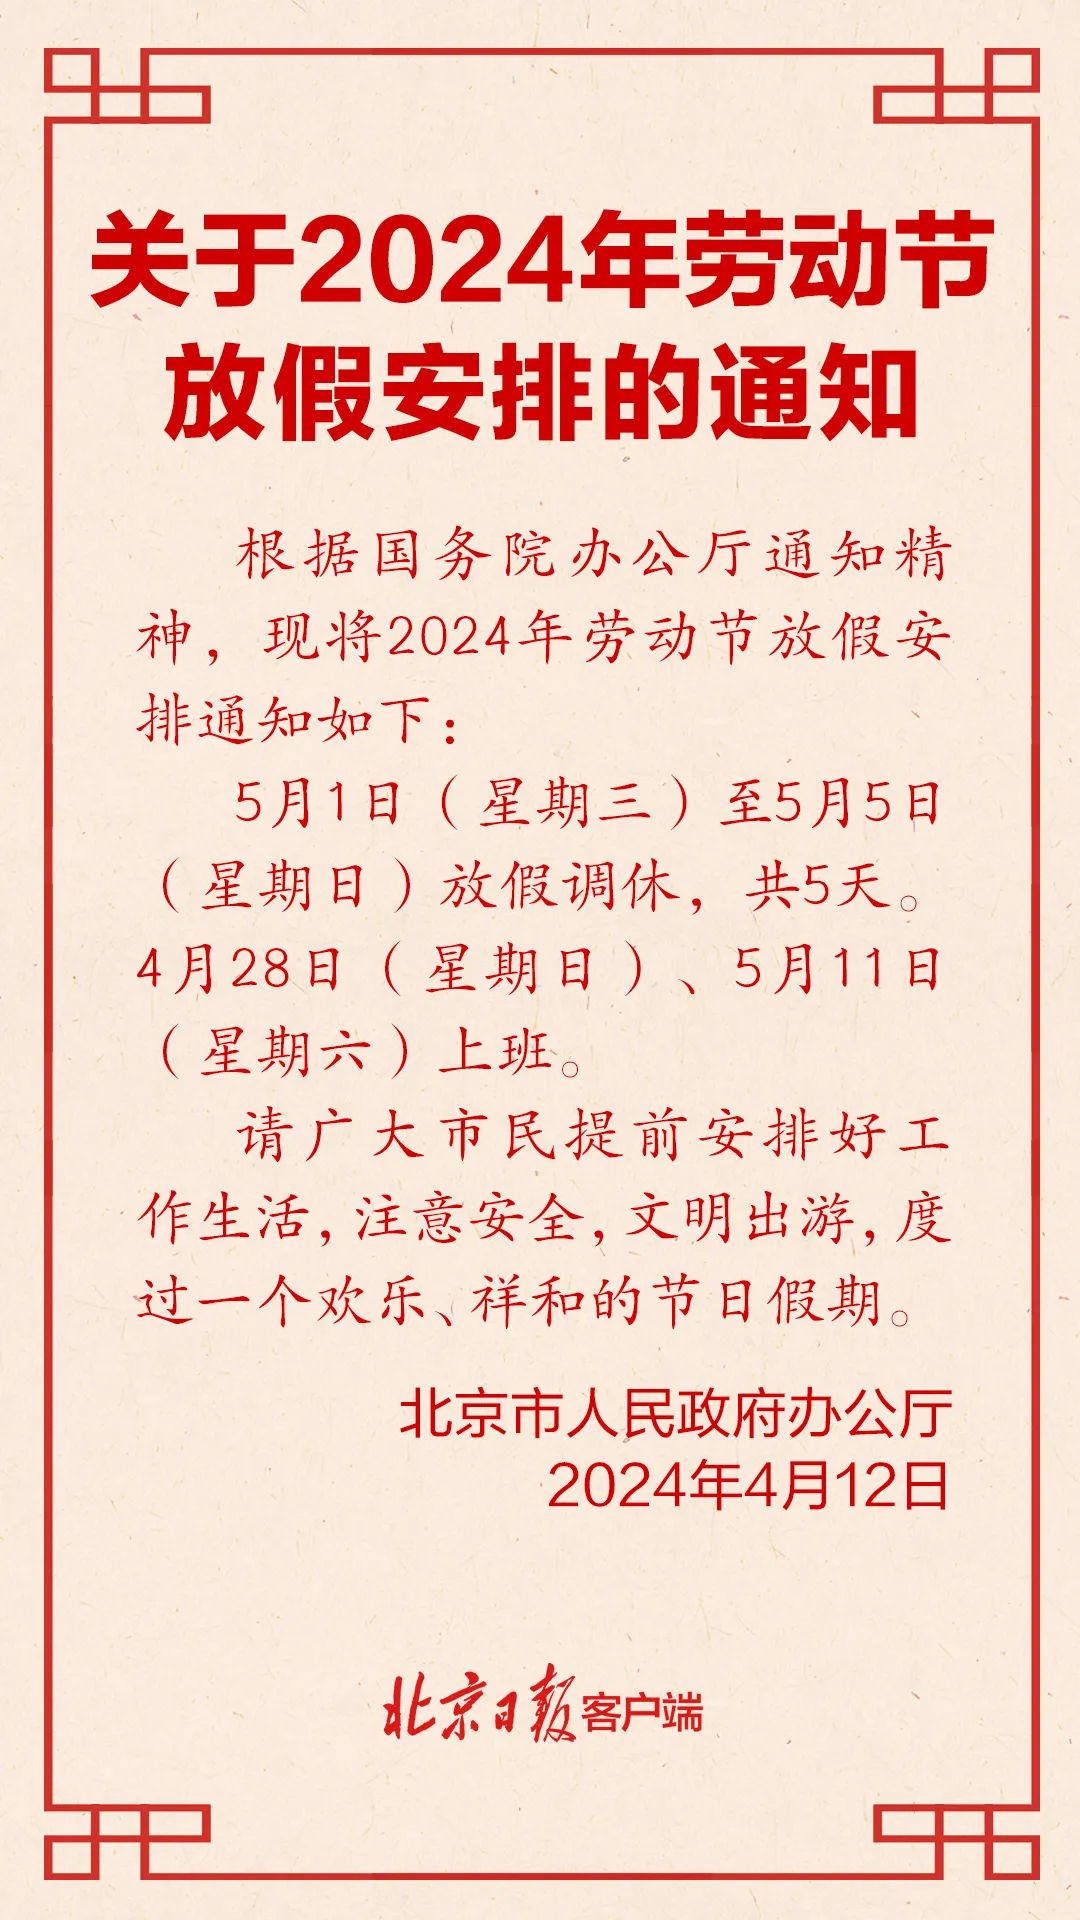 北京发布五一劳动节放假安排!